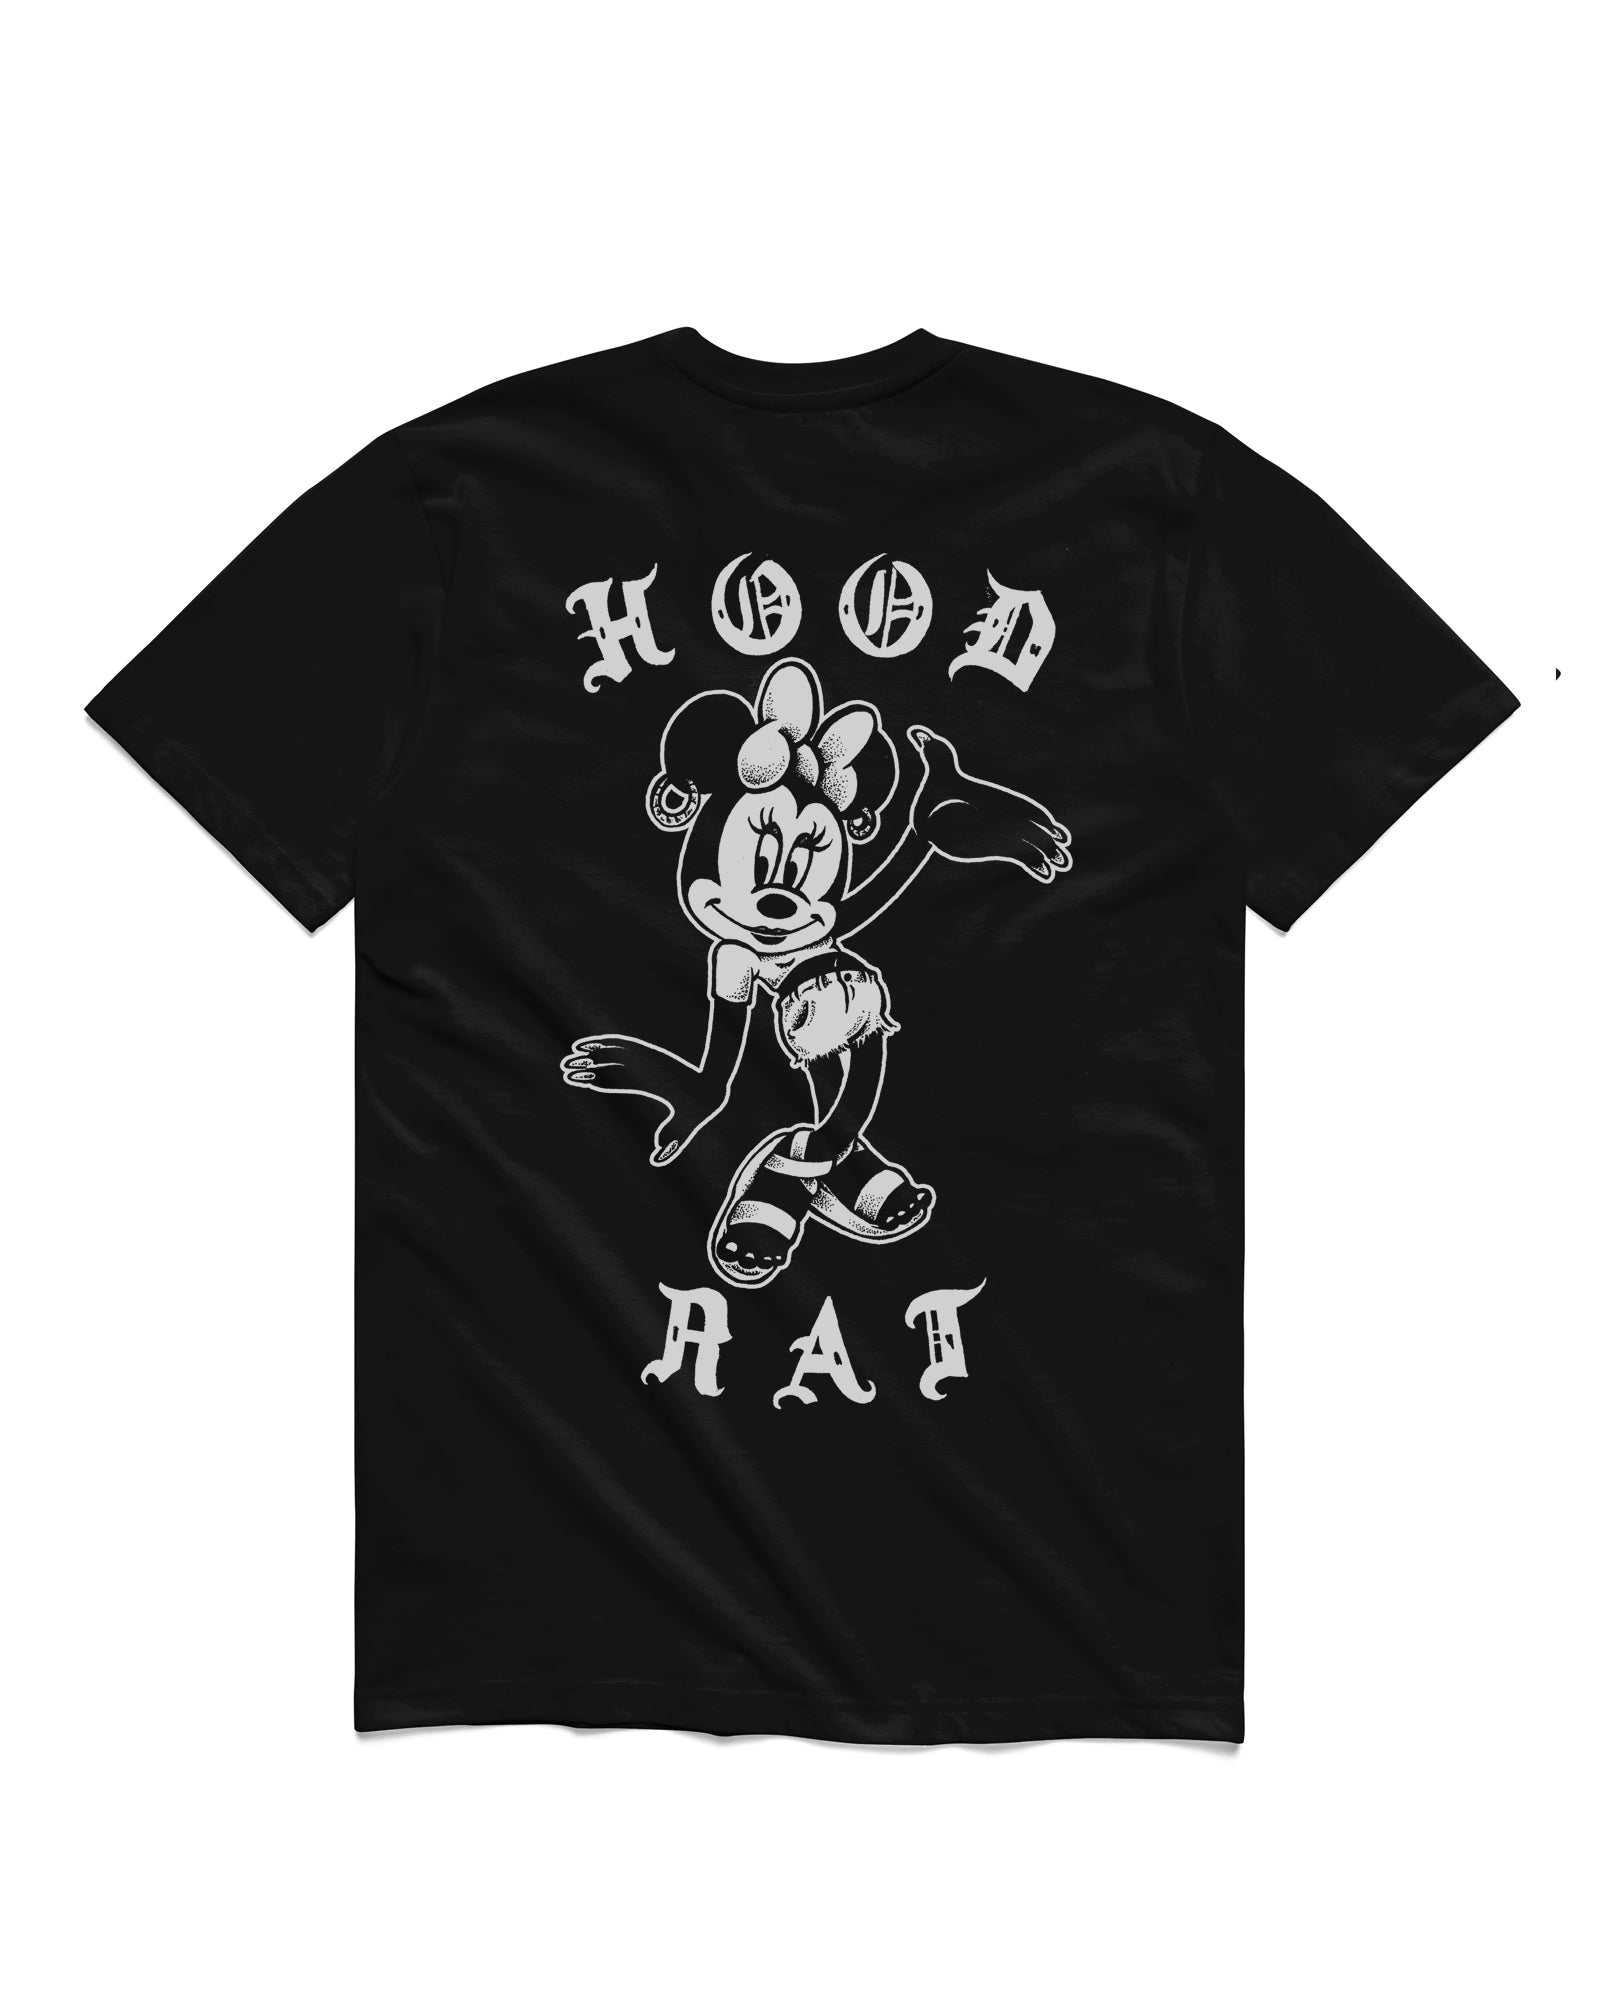 Vaults T-shirt, Hood Rat – benjie escobar art & merchandise